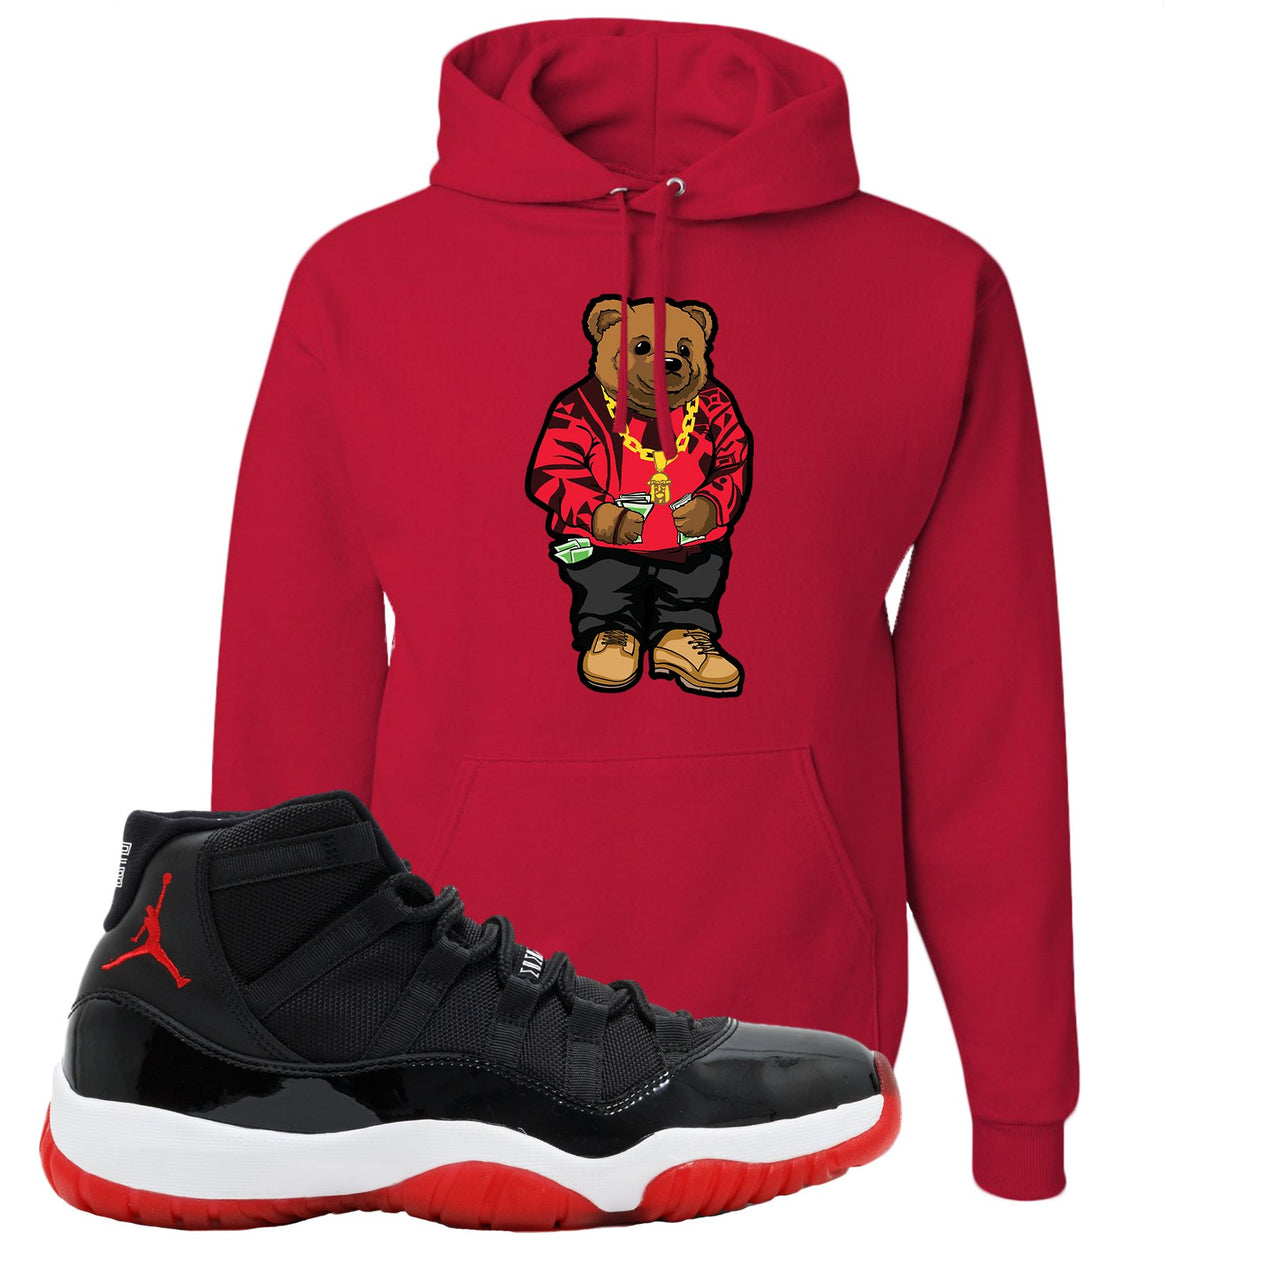 Jordan 11 Bred Sweater Bear Red Sneaker Hook Up Pullover Hoodie